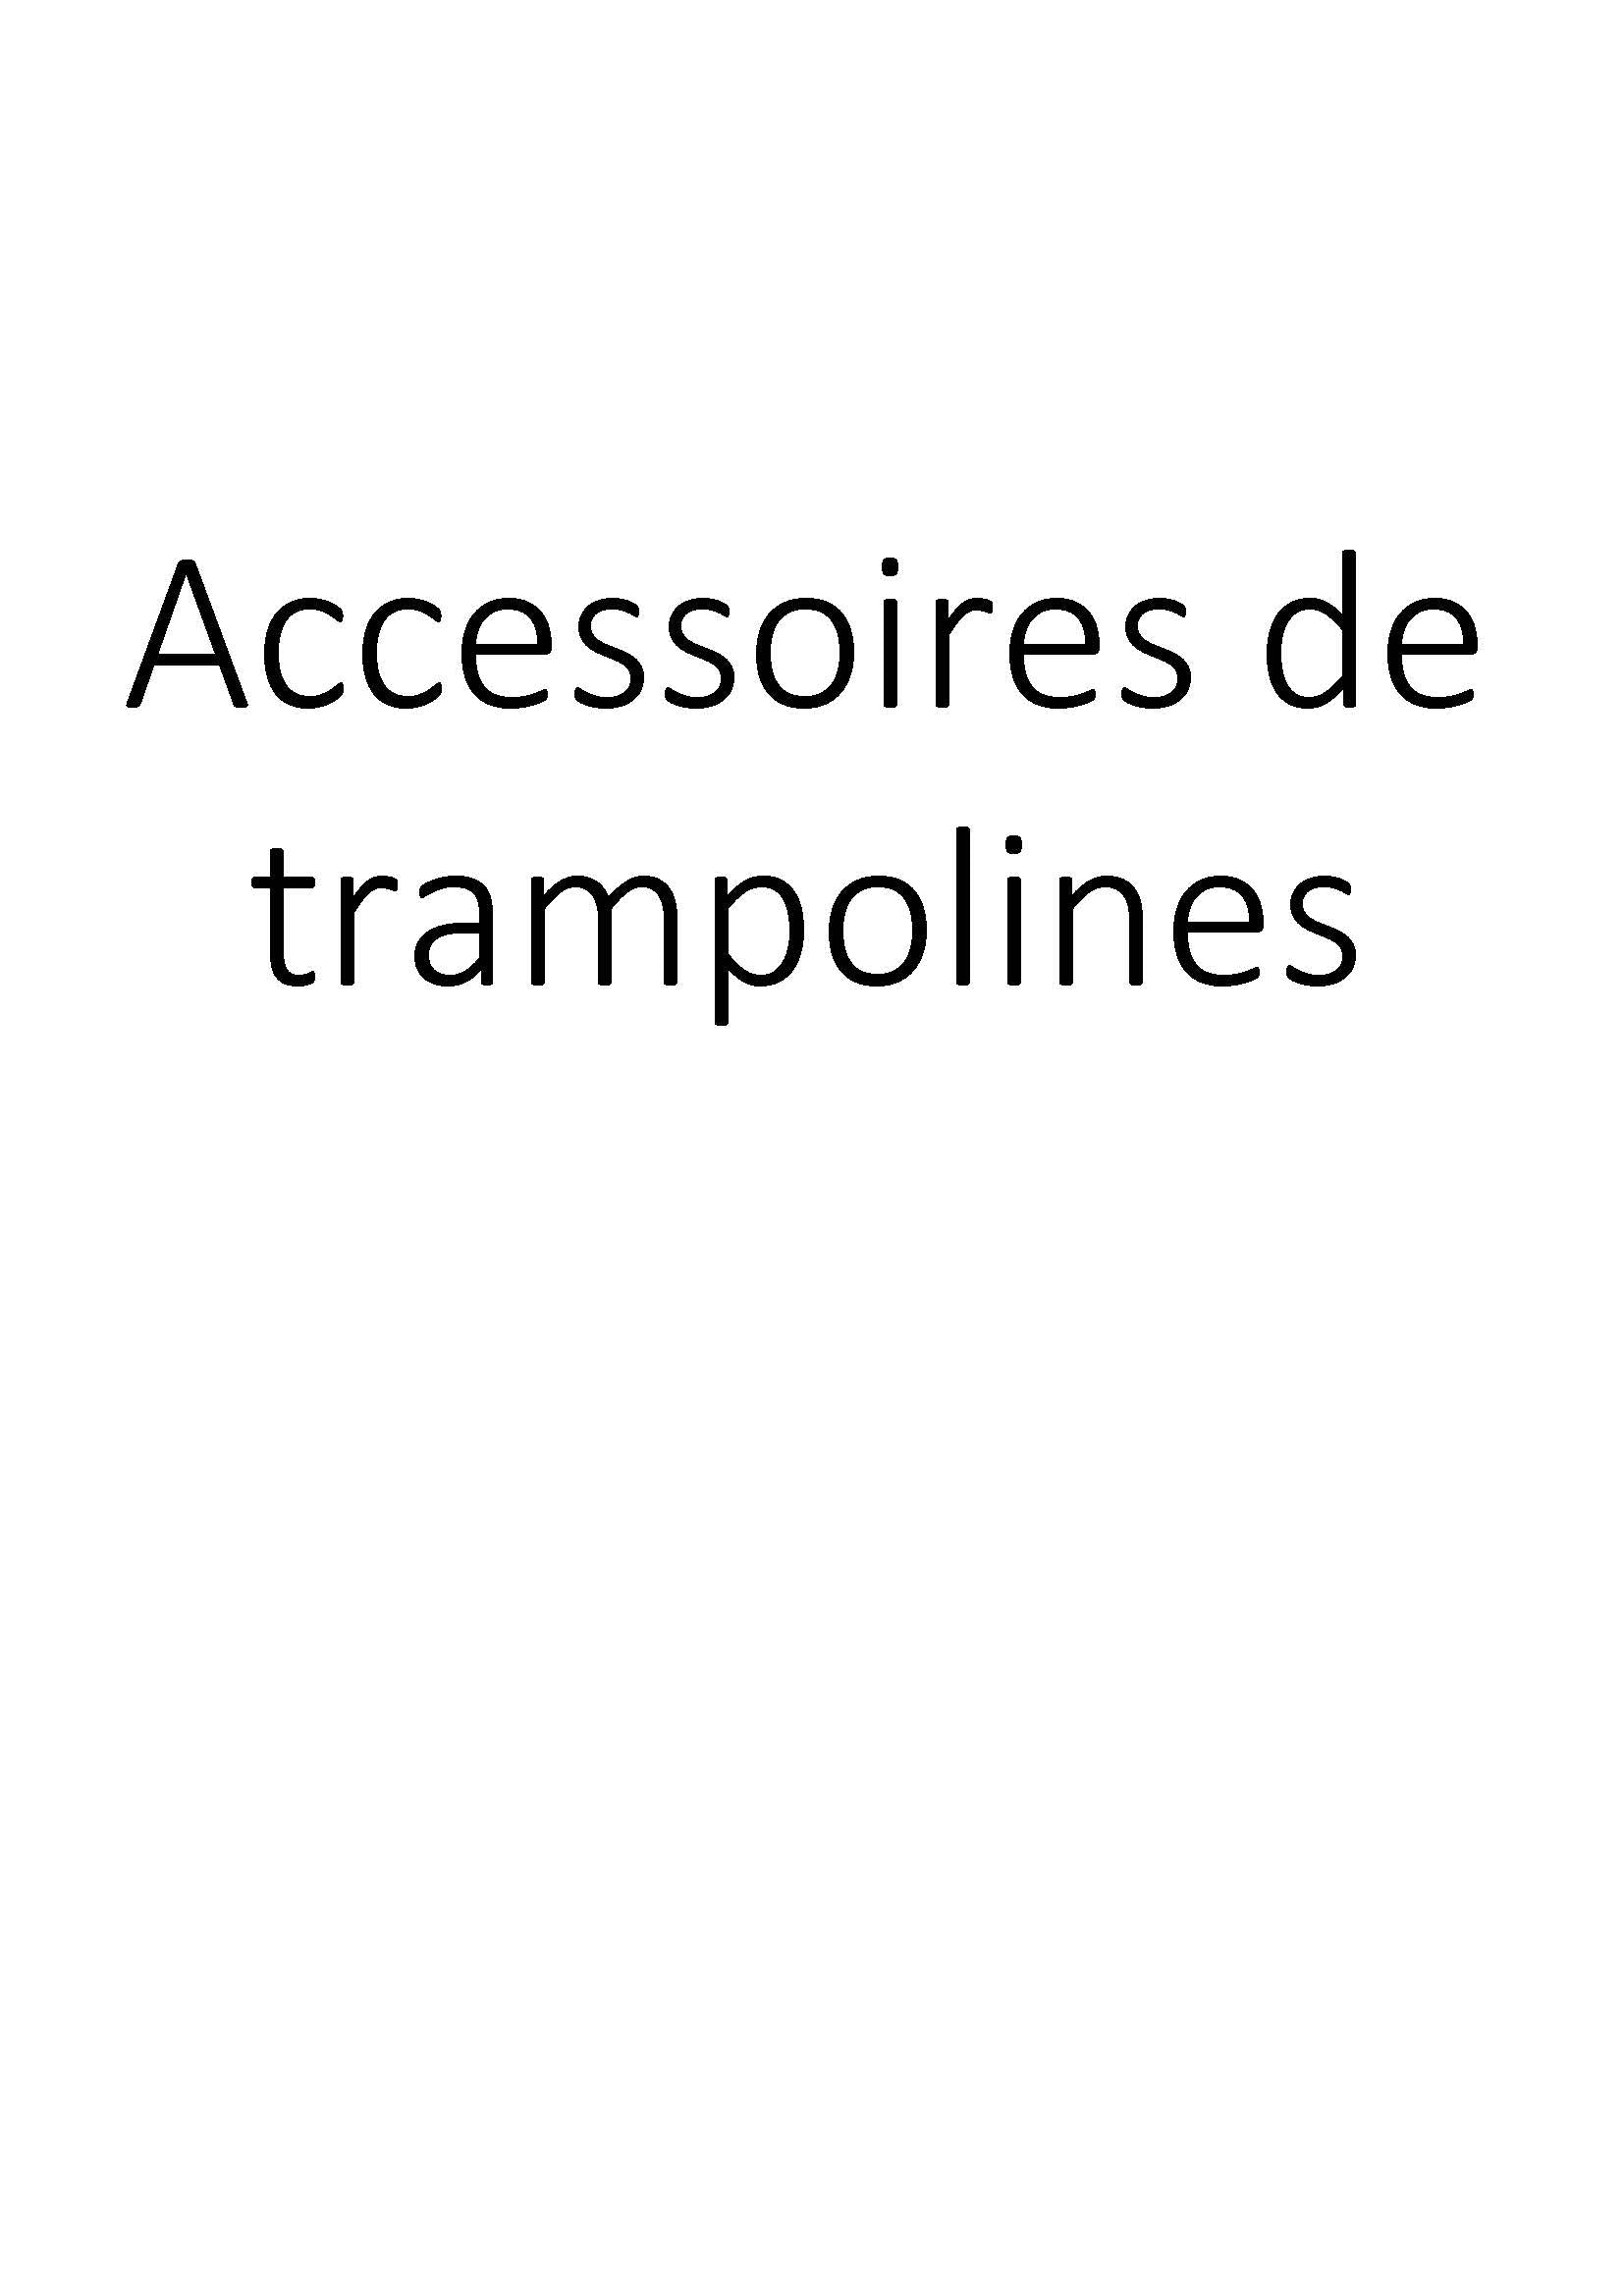 Accessoires de trampolines clicktofournisseur.com